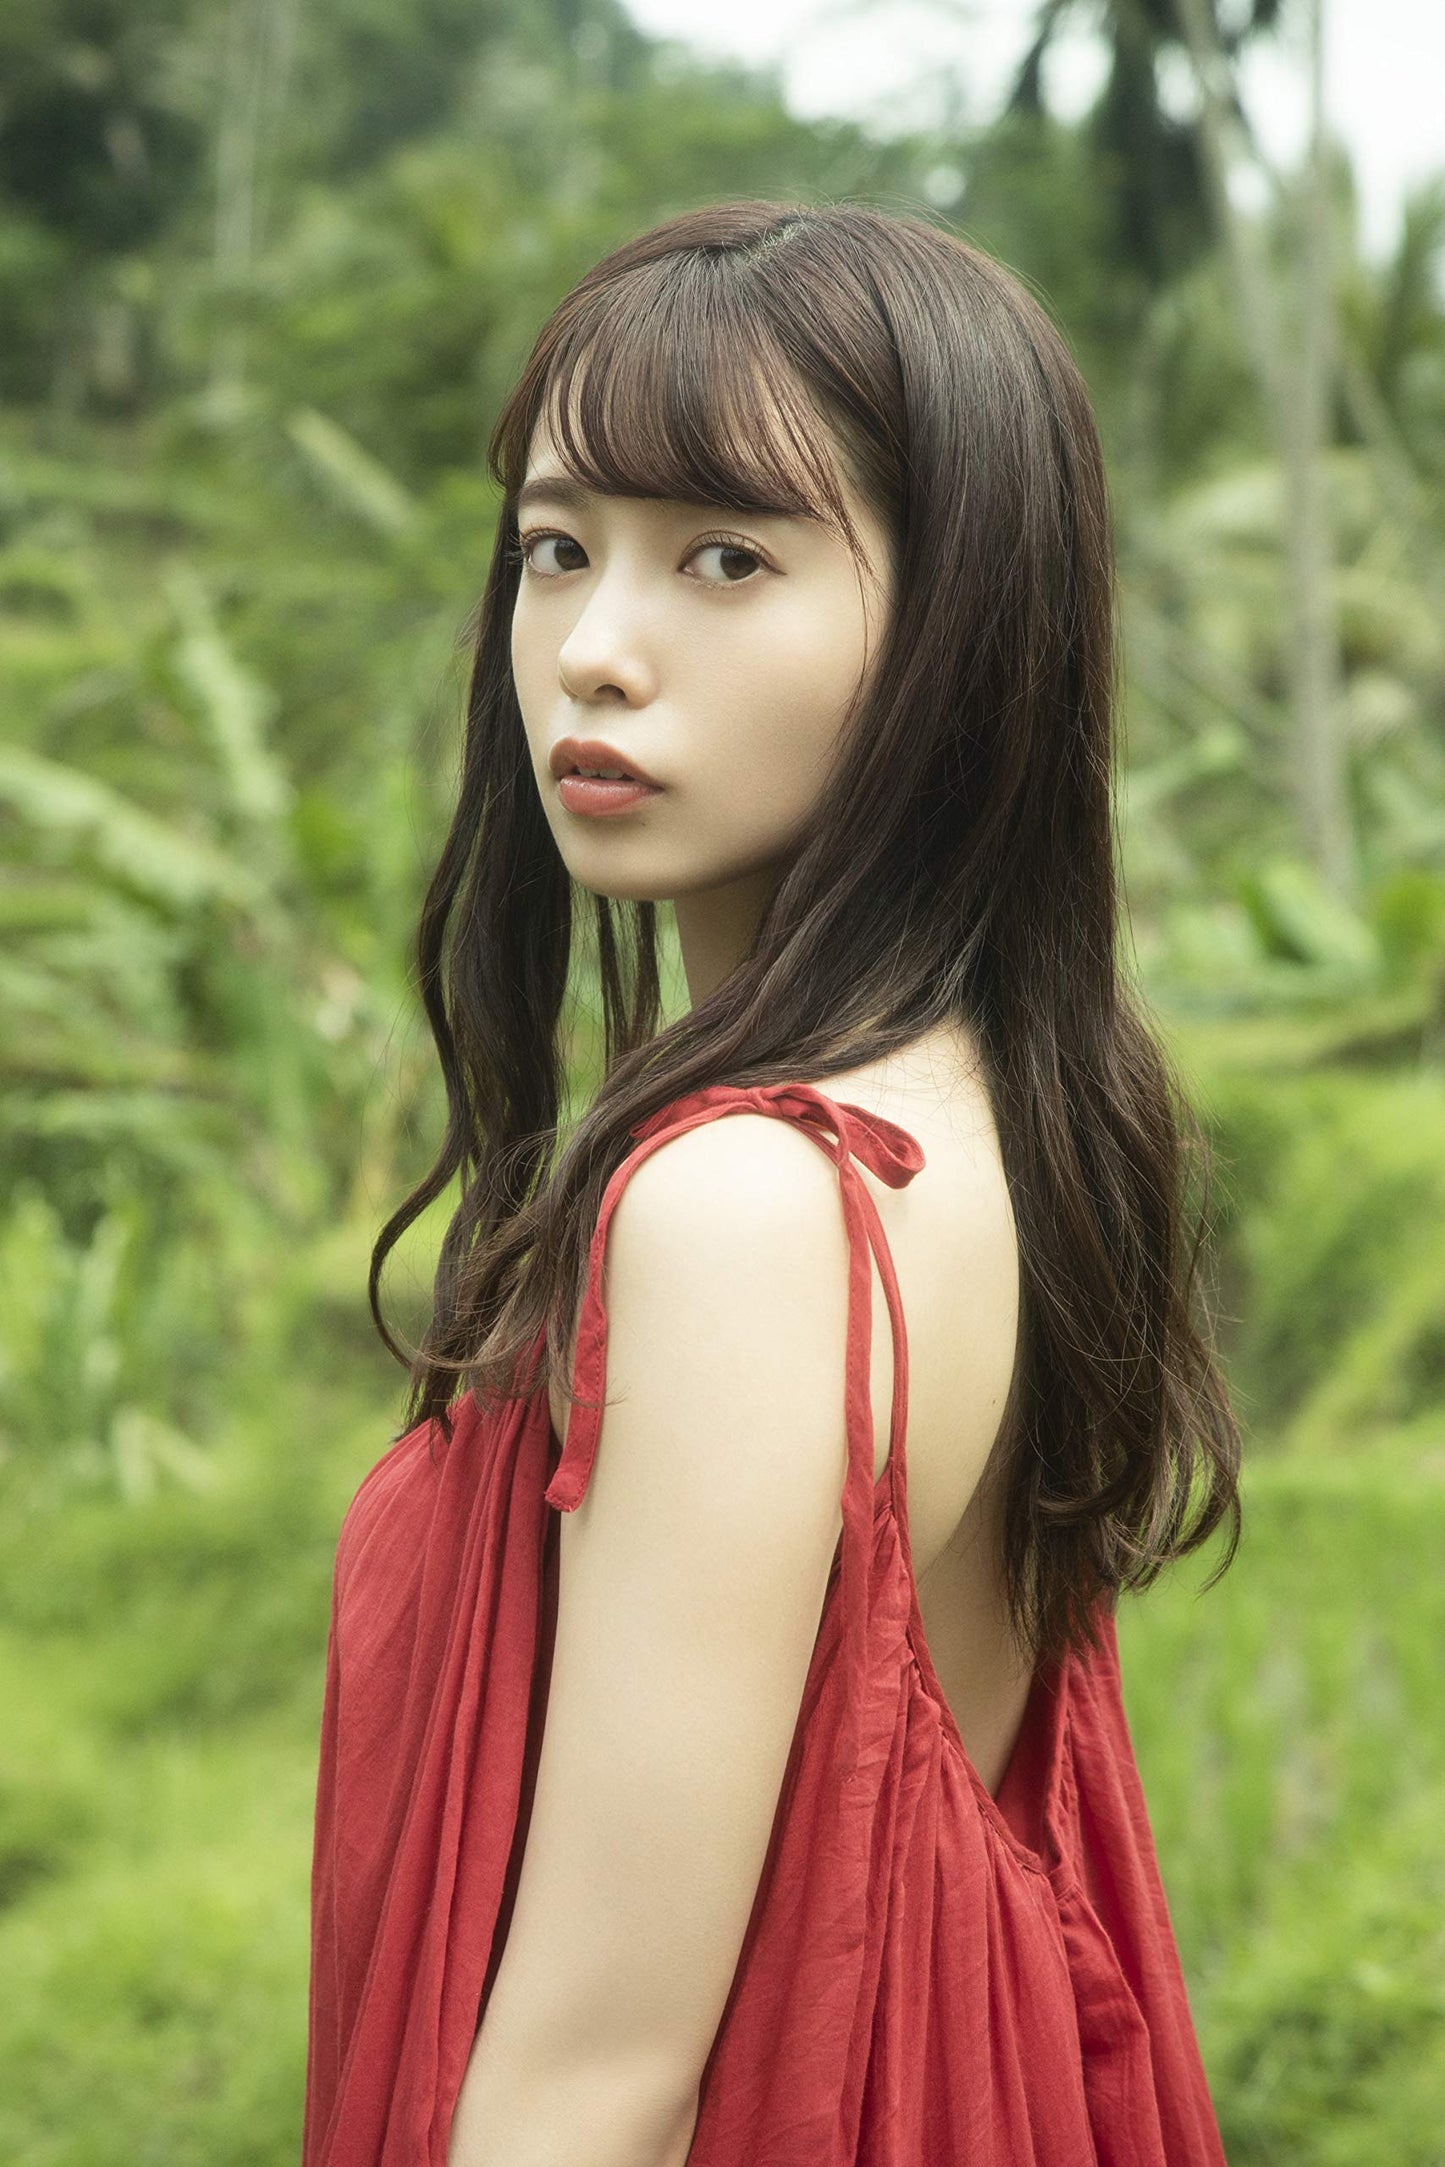 Yuuri Saito Photo Book "7byou no shiawase" / Nogizaka46